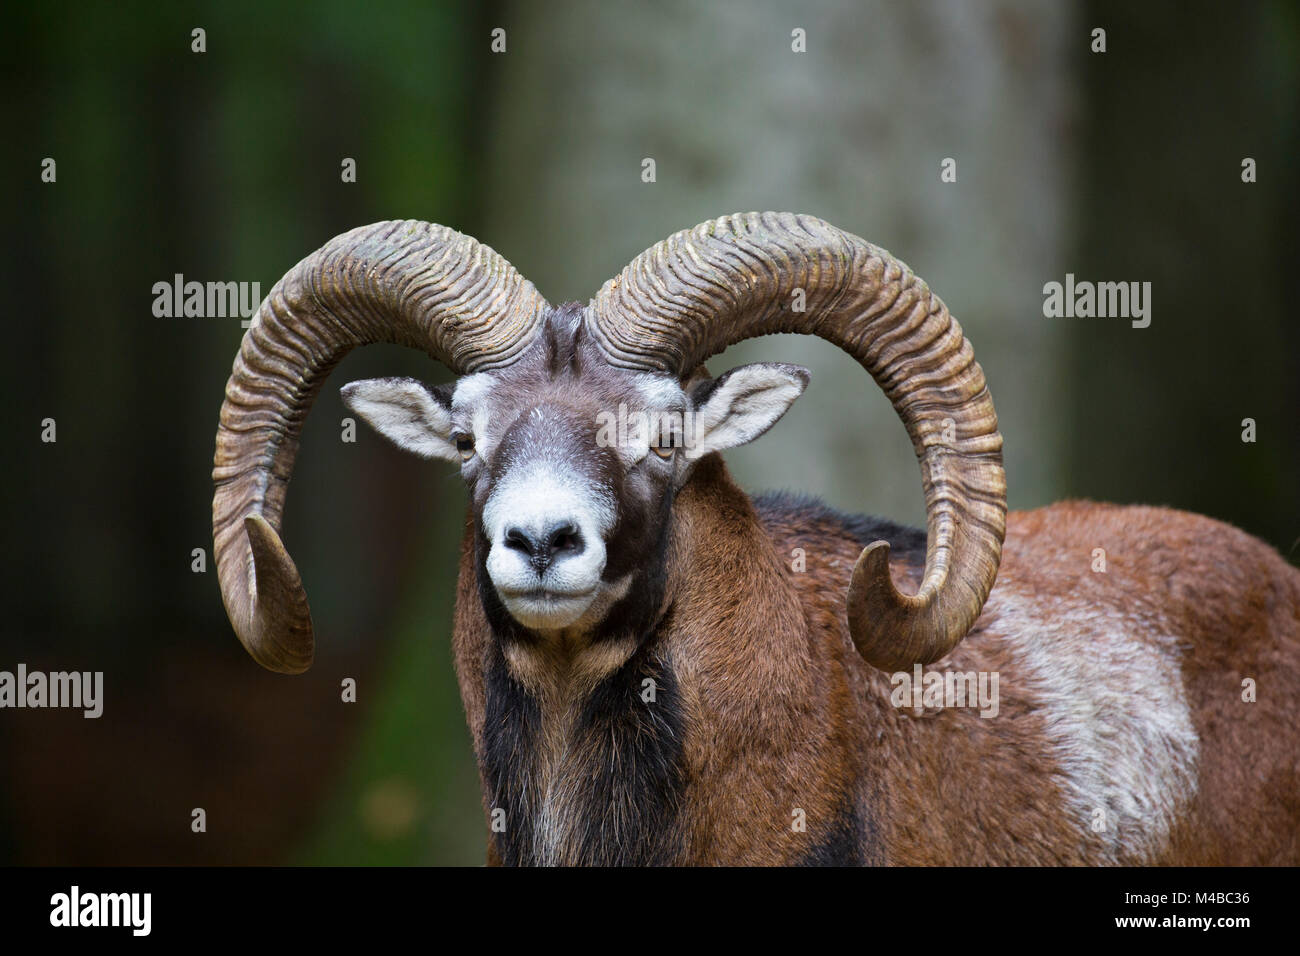 Mouflon (Ovis gmelini européenne / Ovis ammon musimon / Ovis orientalis musimon) portrait de ram avec de grandes cornes en forêt en automne Banque D'Images